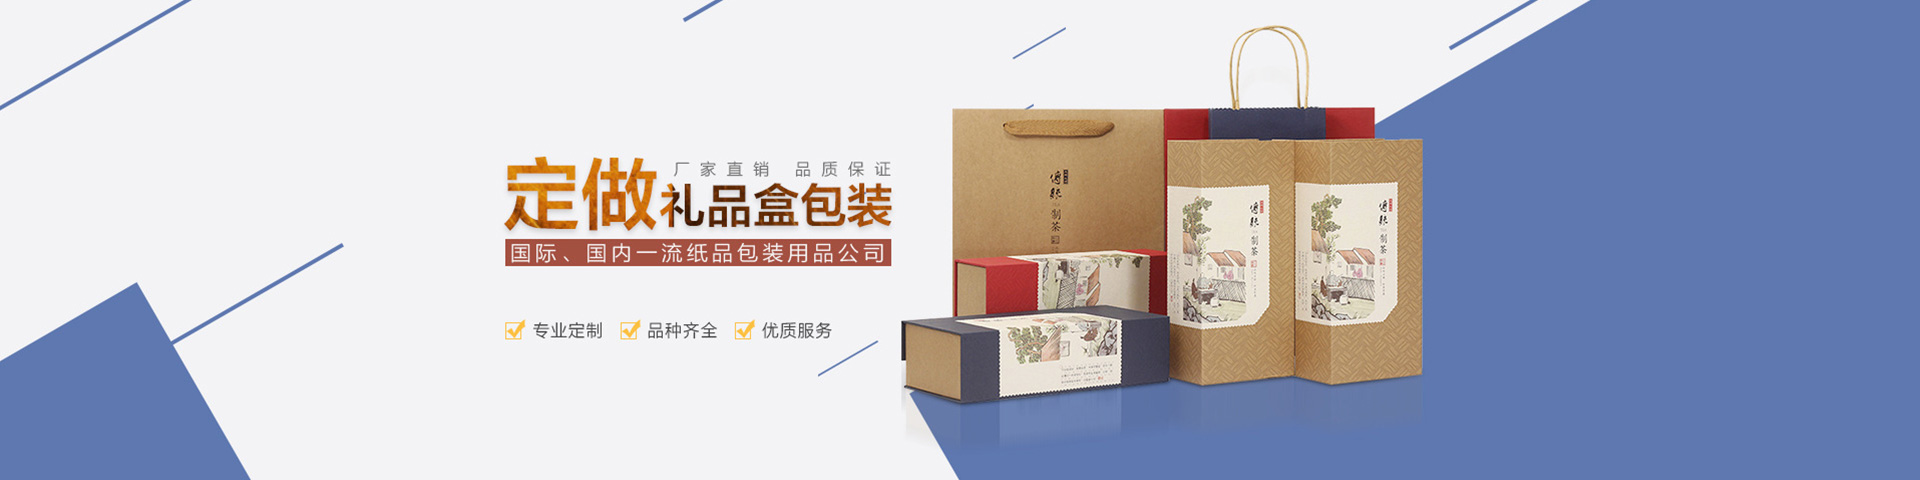 天津印刷包装公司融汇贯通创意设计、包装、印刷等为主打产品，凭借精湛的技术为用户提供彩印包装、包装盒